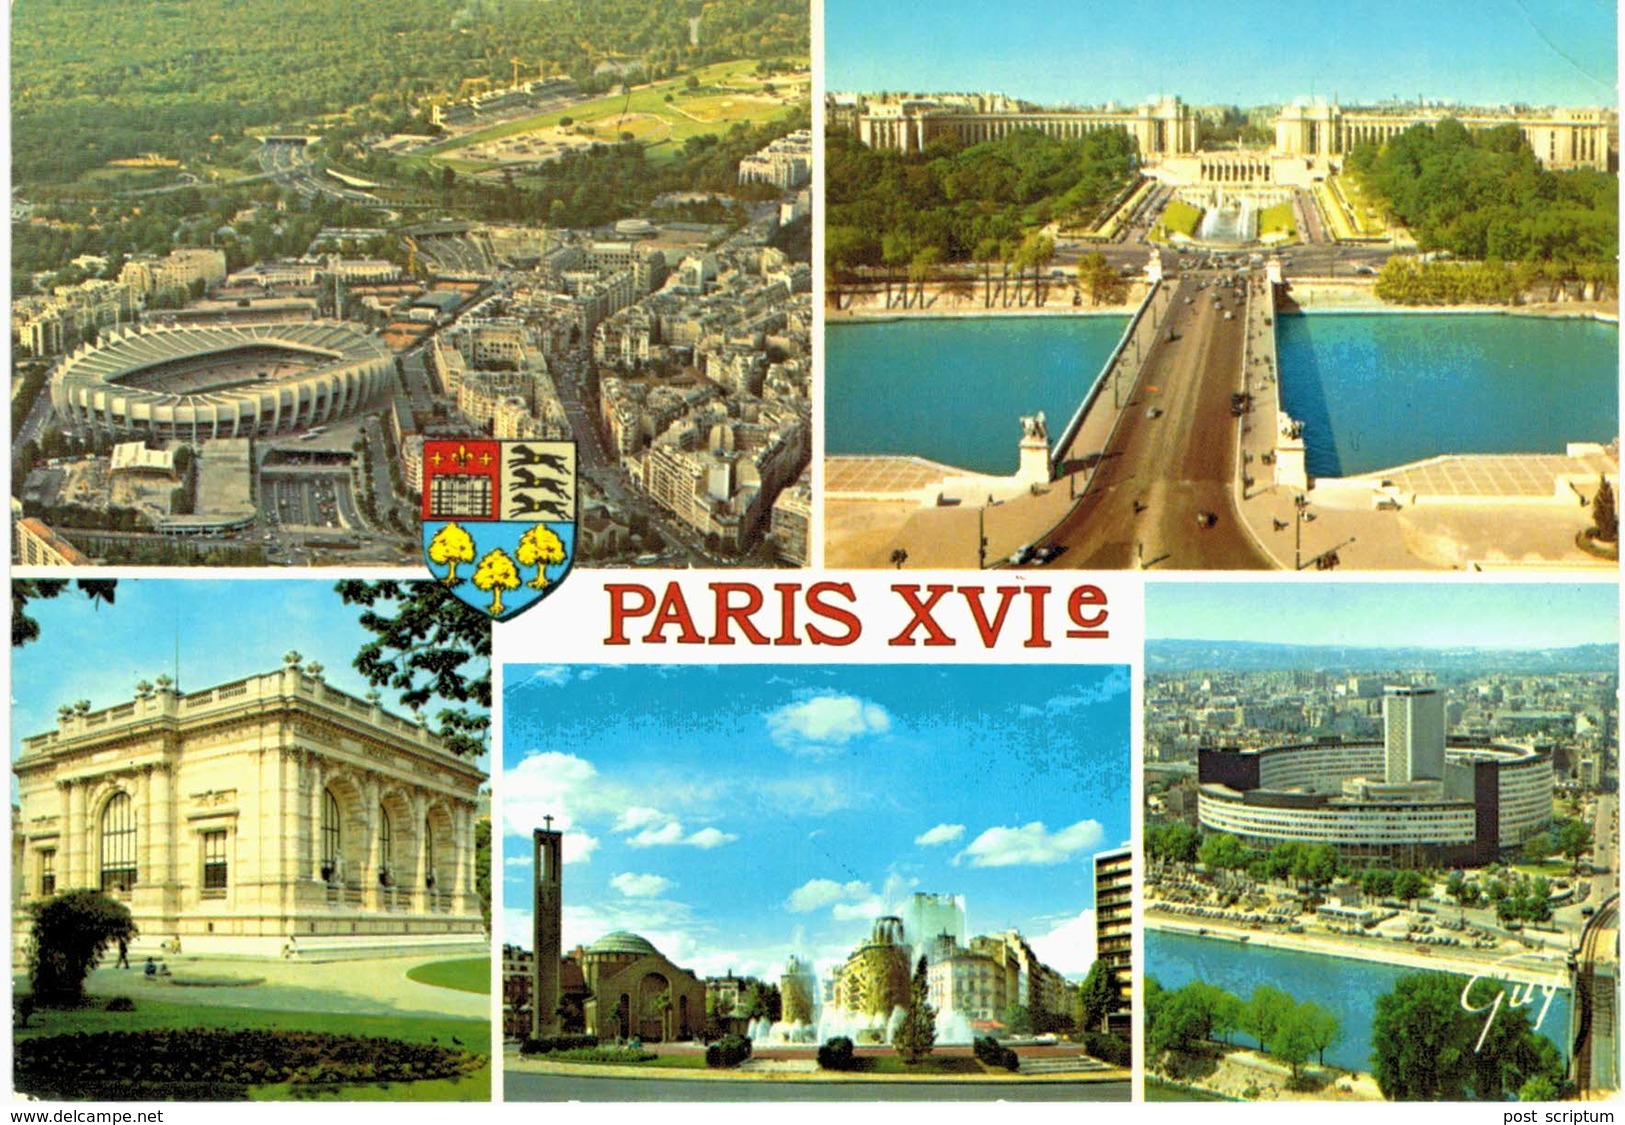 Paris - XVIe - Stade Parc Des Princes - Hippodrome - Bois De Boulogne - Pont D'iéna - Musée Galliéra - Porte De St Cloud - District 16